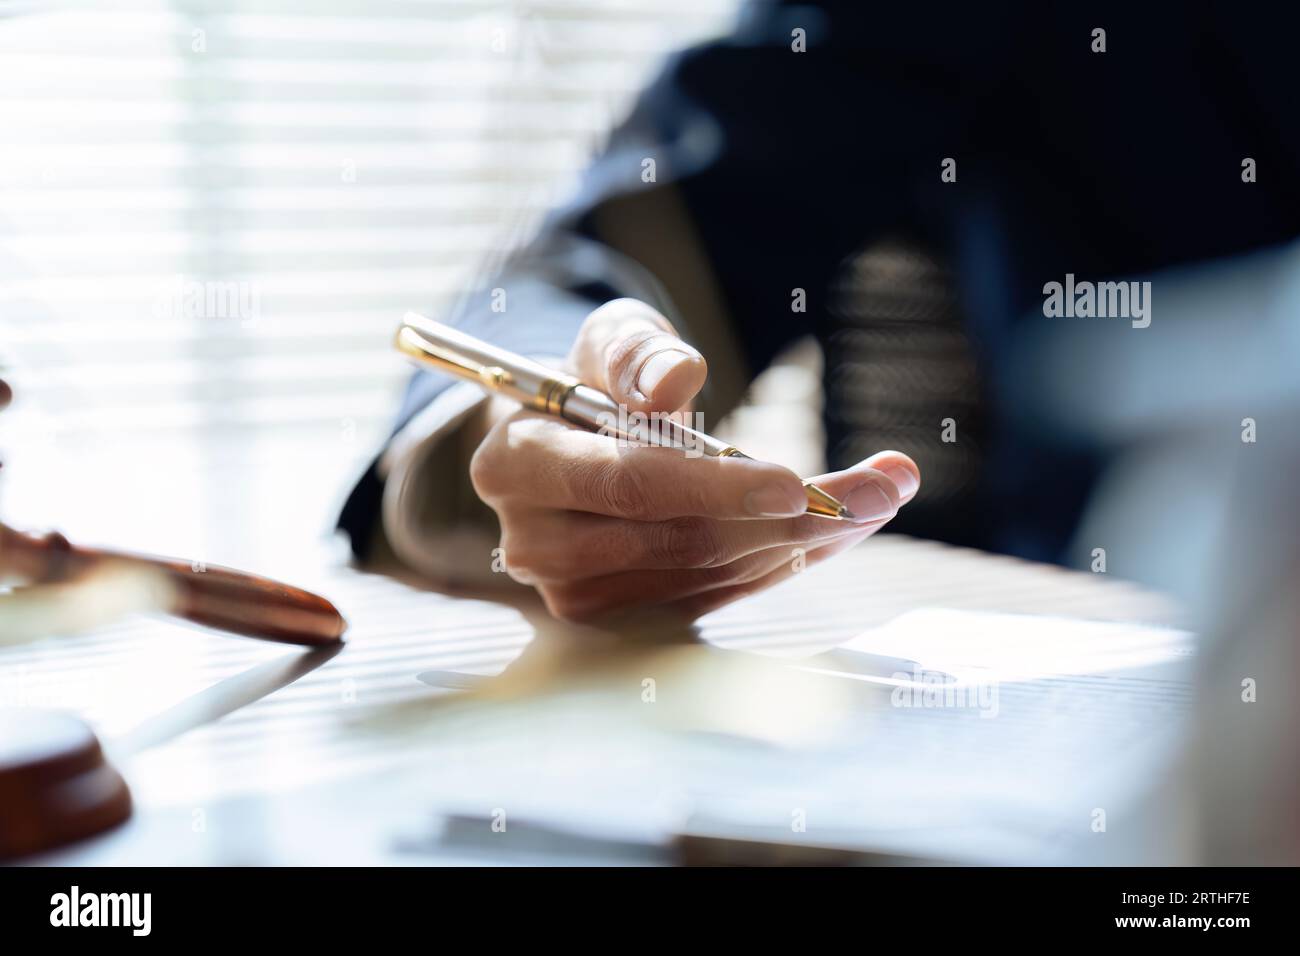 Schließen Sie den Anwalt in der Hand, halten Sie den Stift, unterschreiben Sie das Whitepaper-Formular oder den Antrag, um die Vertragsvereinbarung zu bestätigen und abzuschließen Stockfoto